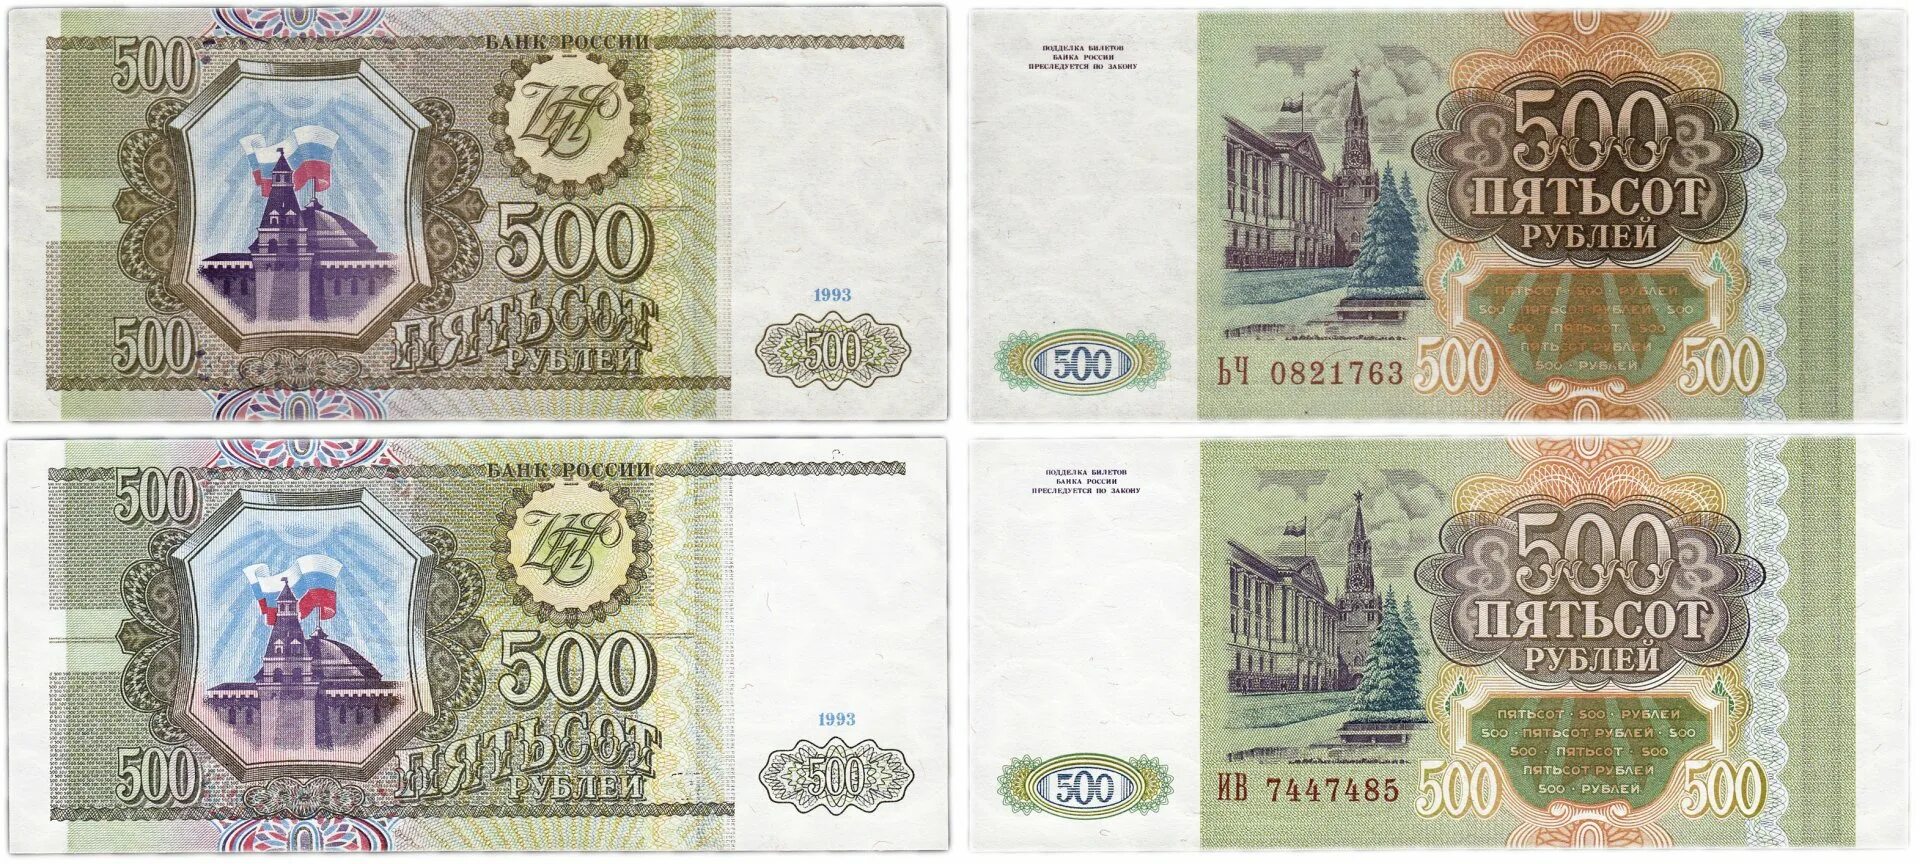 Две 500 в рублях. 500 Тысяч рублей 1993. Пятьсот рублей 1993 года. 500 Рублей 1993 года бумажные. 100 И 500 рублей 1993 года бумажные.